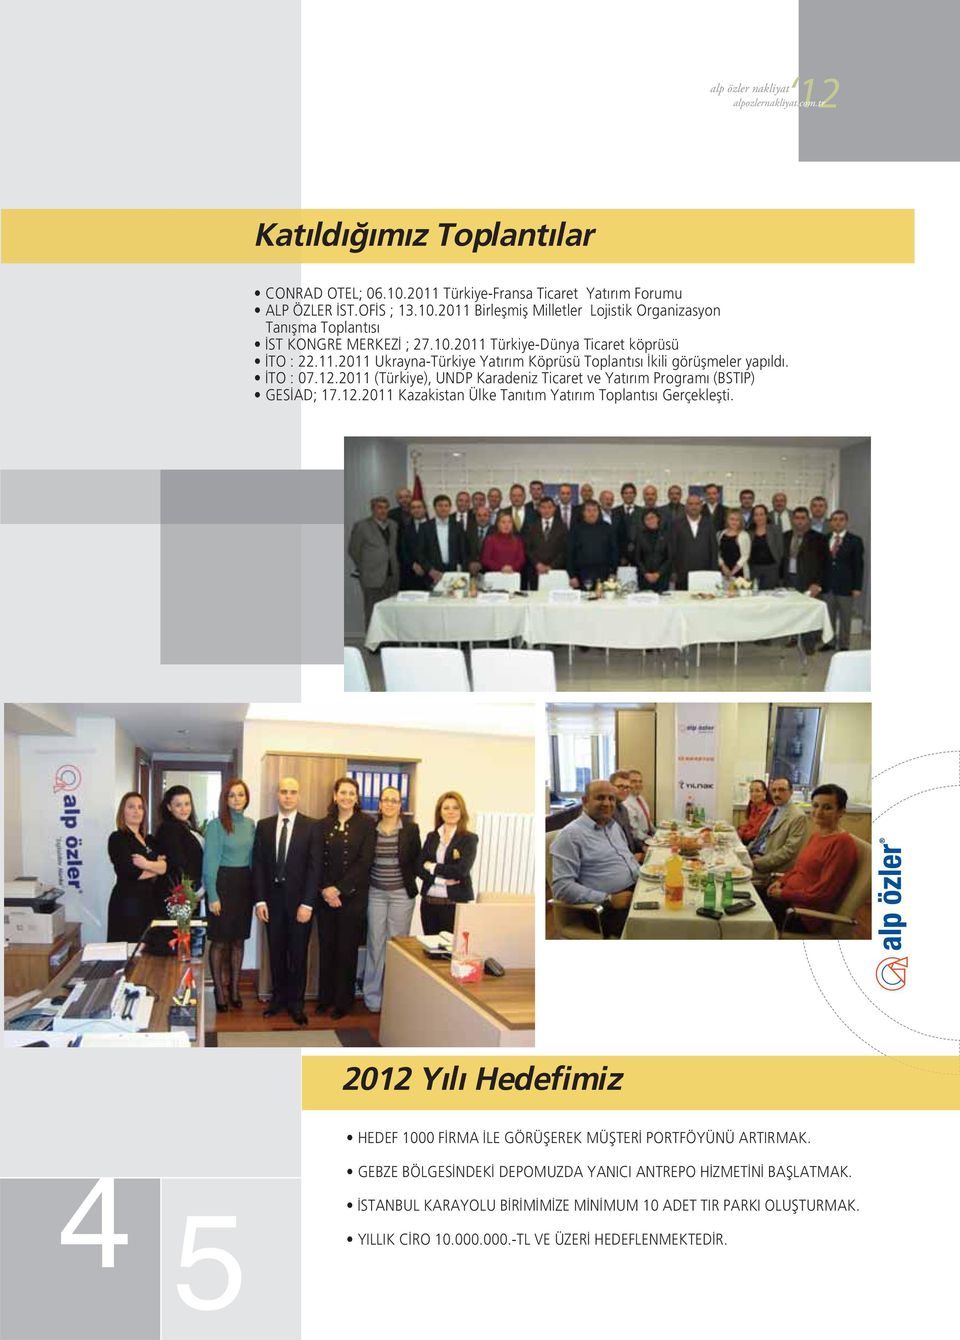 2011 (Türkiye), UNDP Karadeniz Ticaret ve Yatırım Programı (BSTIP) GESİAD; 17.12.2011 Kazakistan Ülke Tanıtım Yatırım Toplantısı Gerçekleşti.